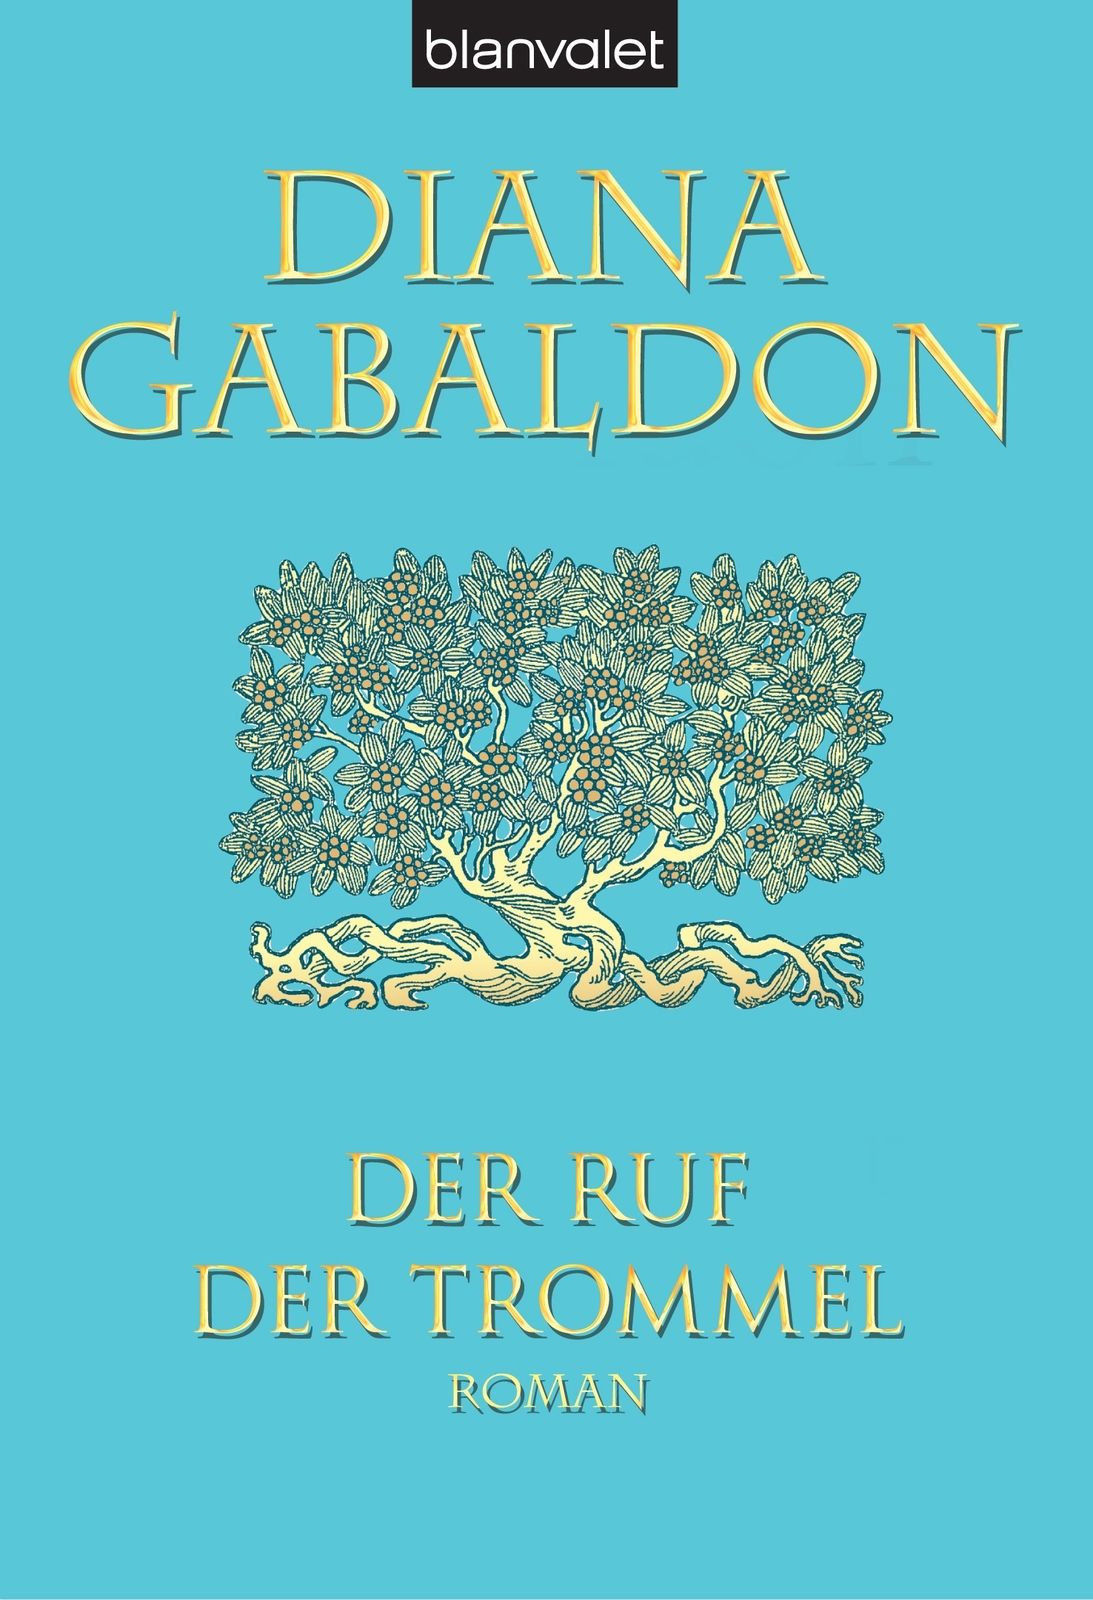 Diana Gabaldon - komplette Outlander-Saga, Bd. 1-8, TB, gebraucht, guter Zustand